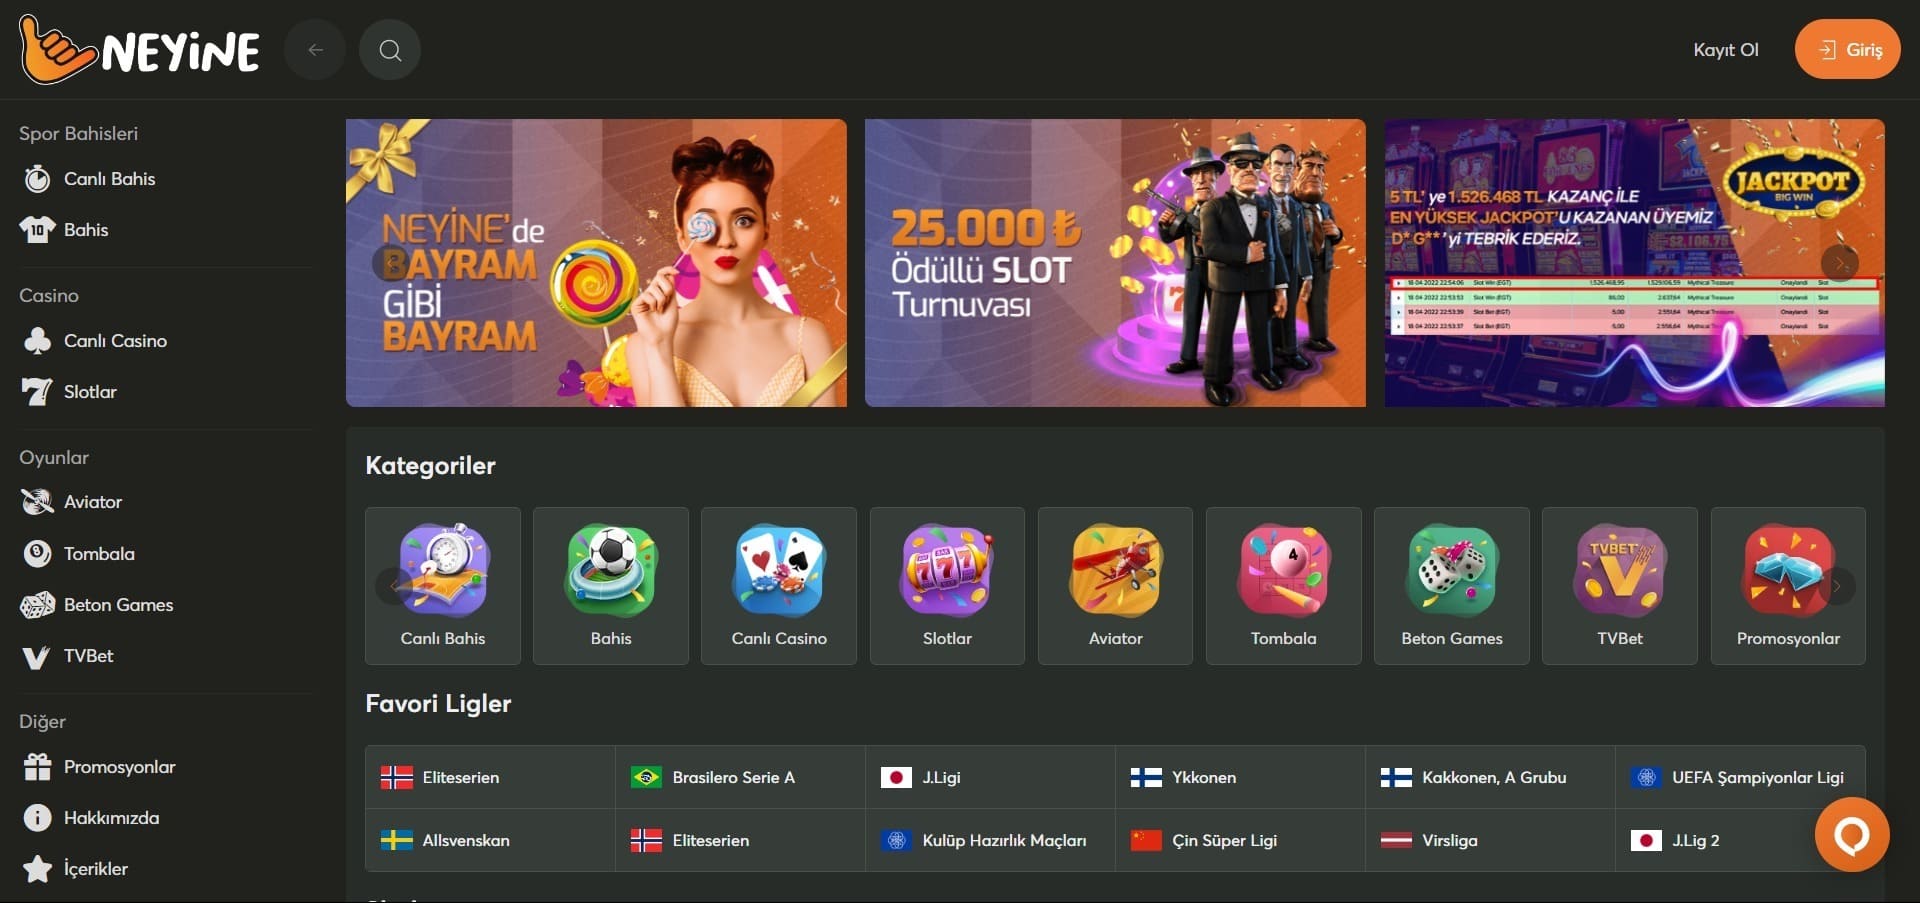 Neyine Casino'nun resmi web sitesi